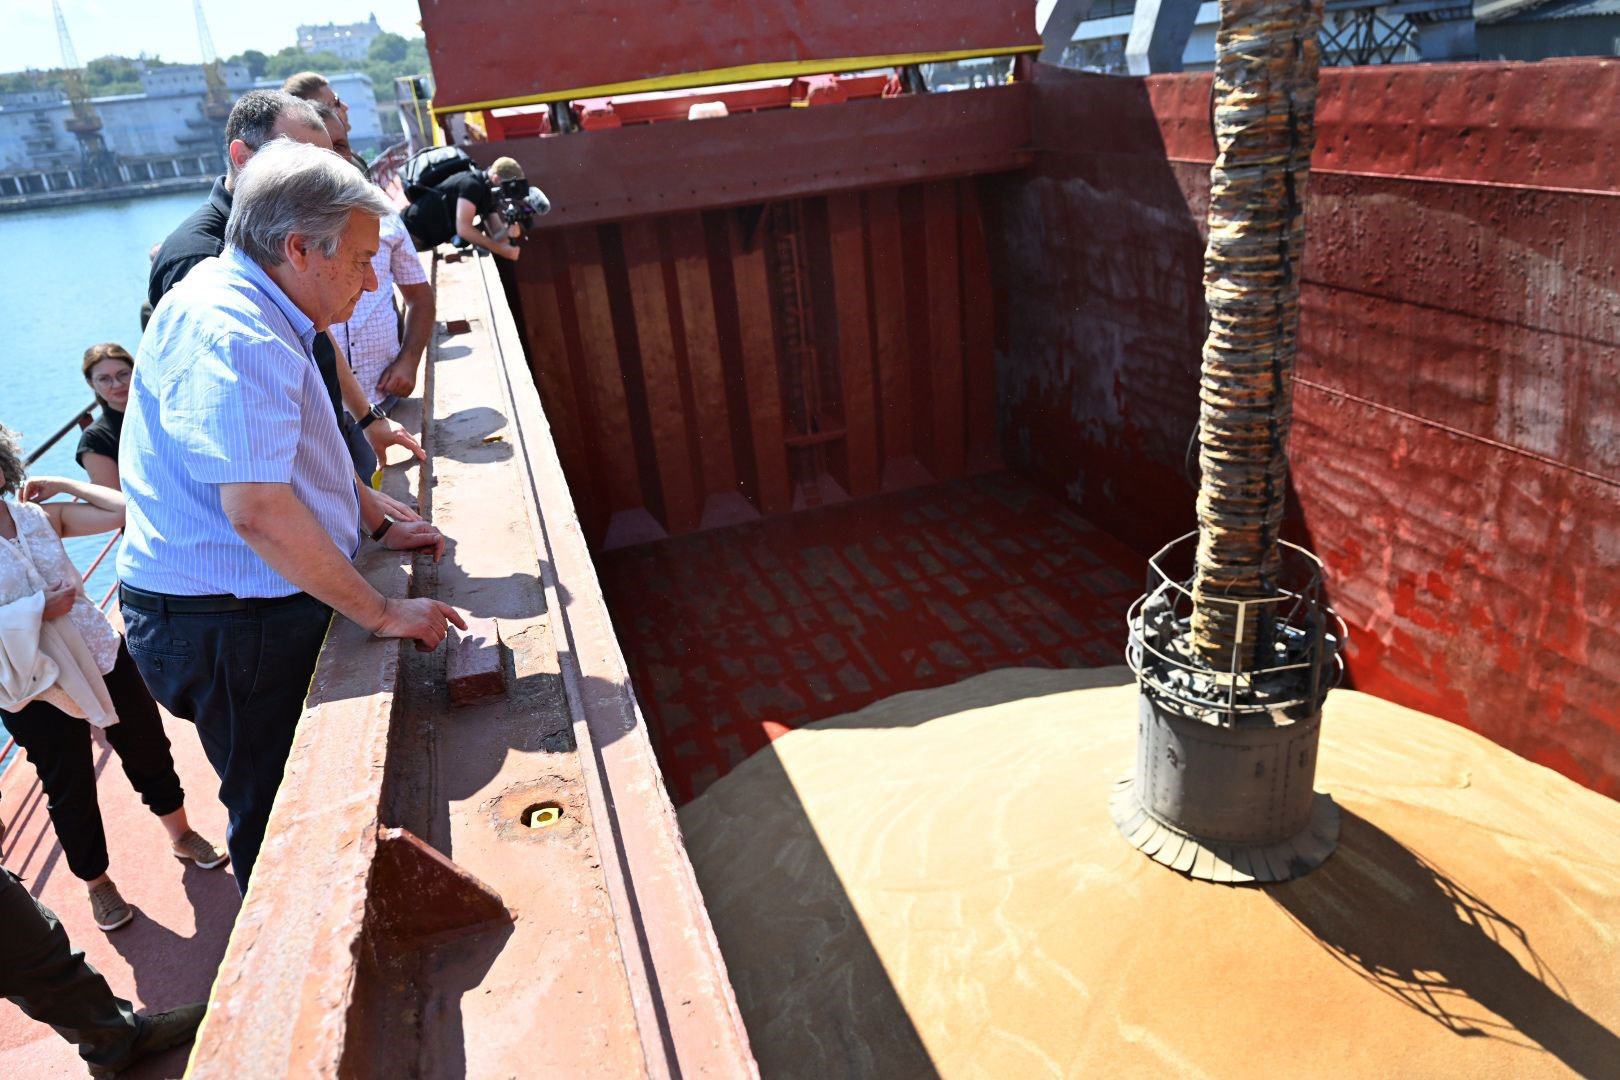 الأمين العام أنطونيو غوتيريش يشاهد الحبوب وهي تُحمَّل على متن سفينة كوبروسلي في أوديسا، أوكرانيا.